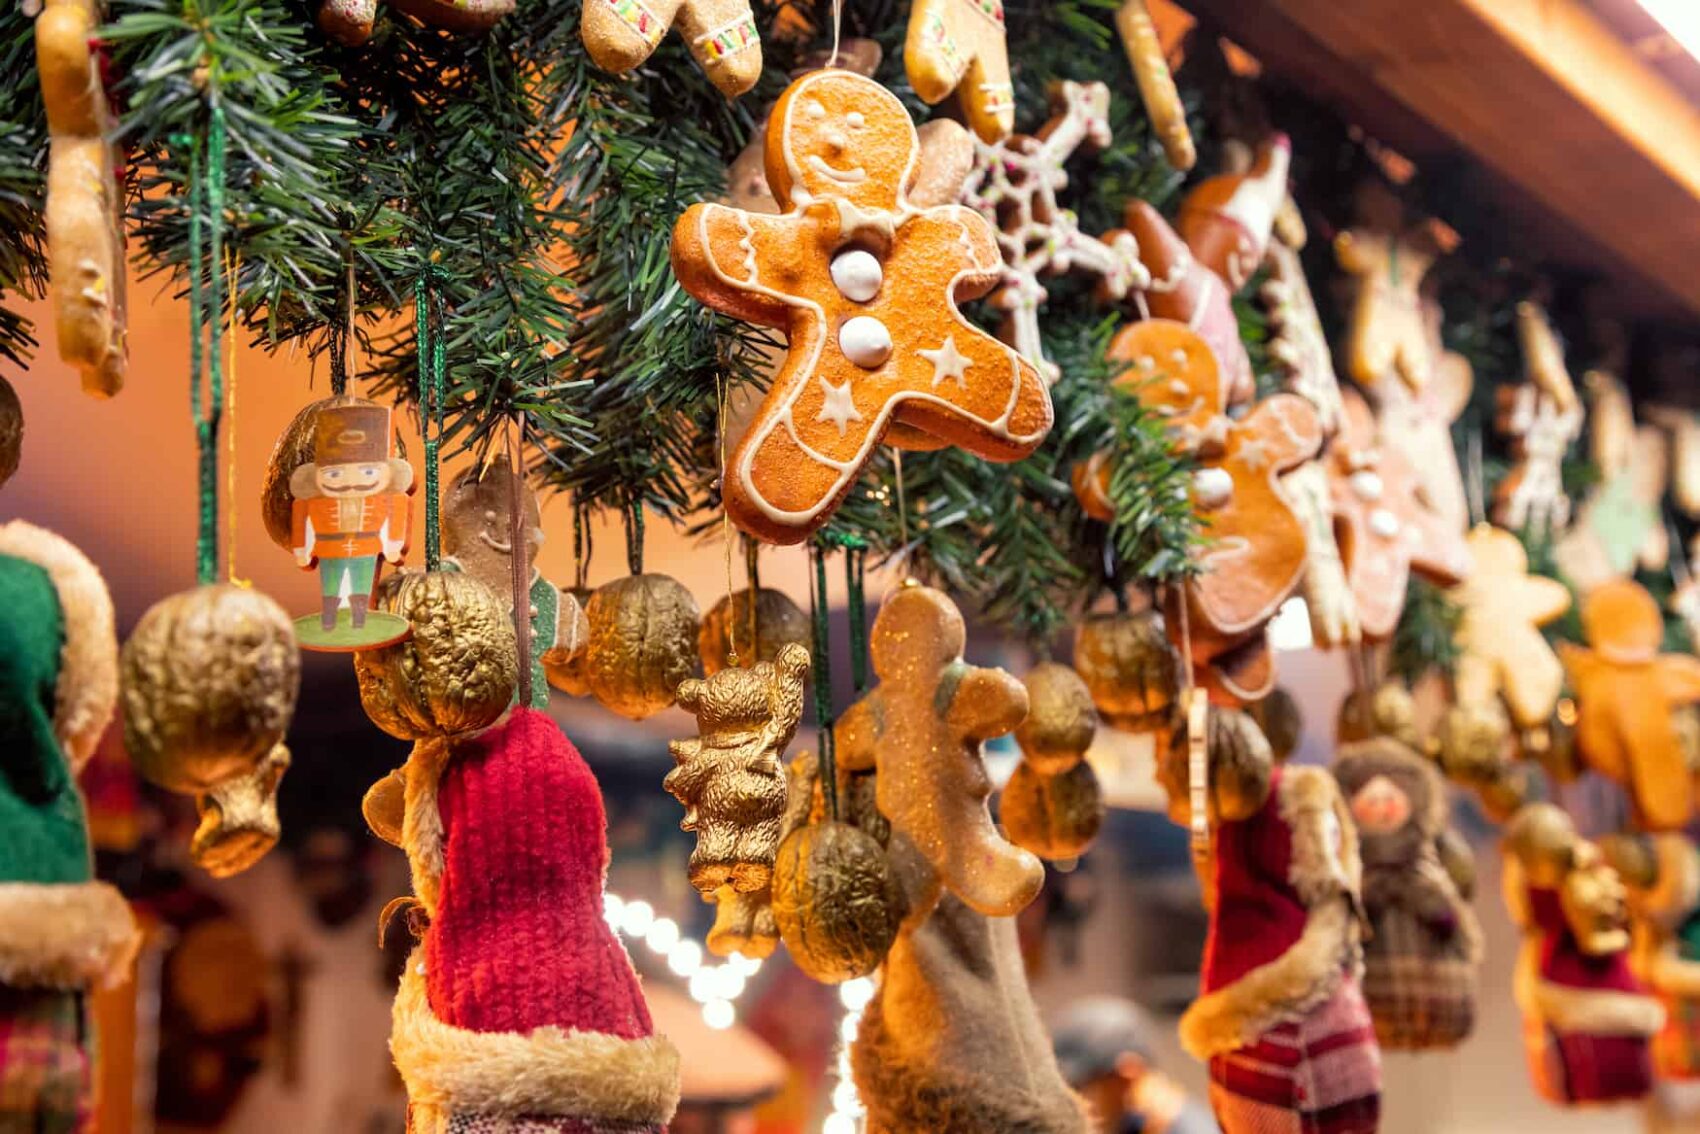 Eine Hütte auf dem Weihnachtsmarkt ist mit Tannenzweigen und Anhängern geschmückt. Ein Anhänger ist ein klassischer Lebkuchenmann in braun mit Verzierungen aus Zuckerguss.